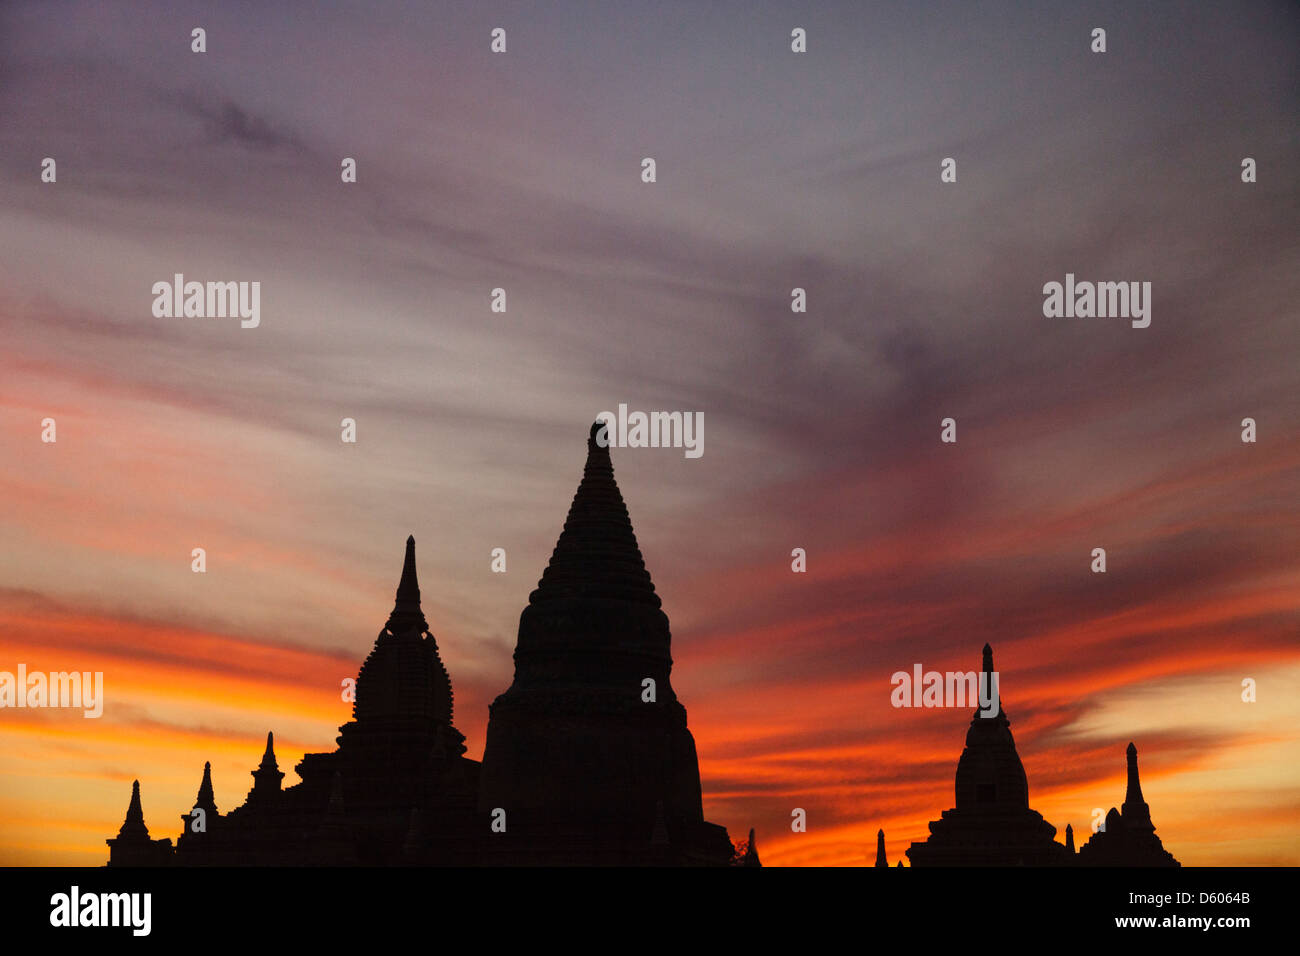 Die Stupas und Pagoden von Bagan, Myanmar, Silhouette nach Sonnenuntergang 7 Stockfoto